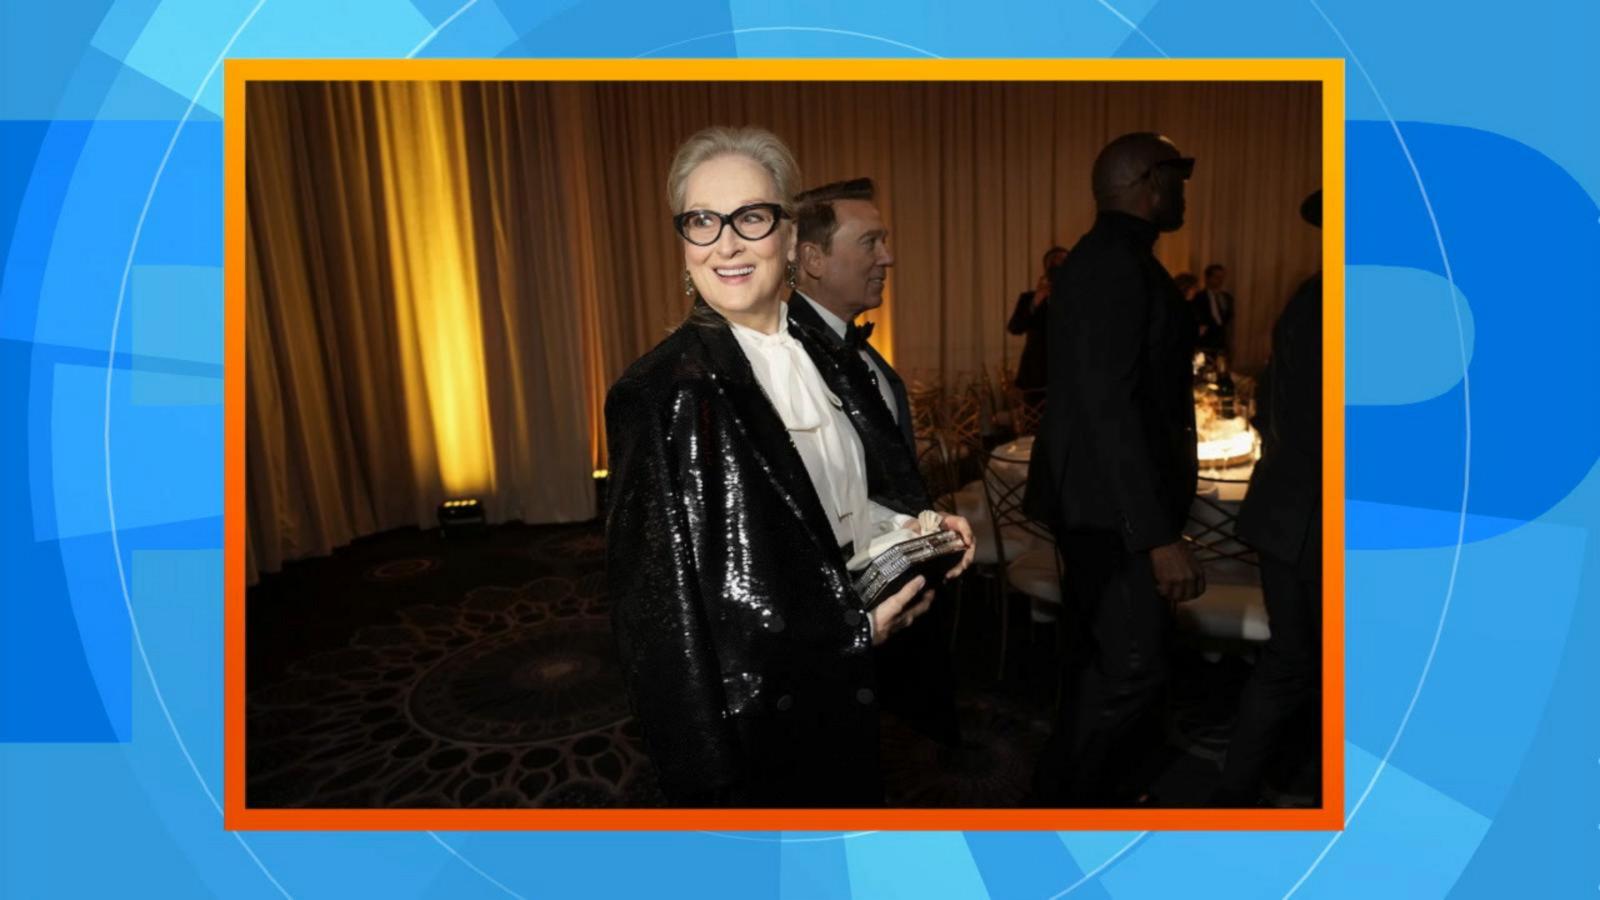 VIDEO: Meryl Streep, Oprah Winfrey, Lionel Richie added as Grammy presenters